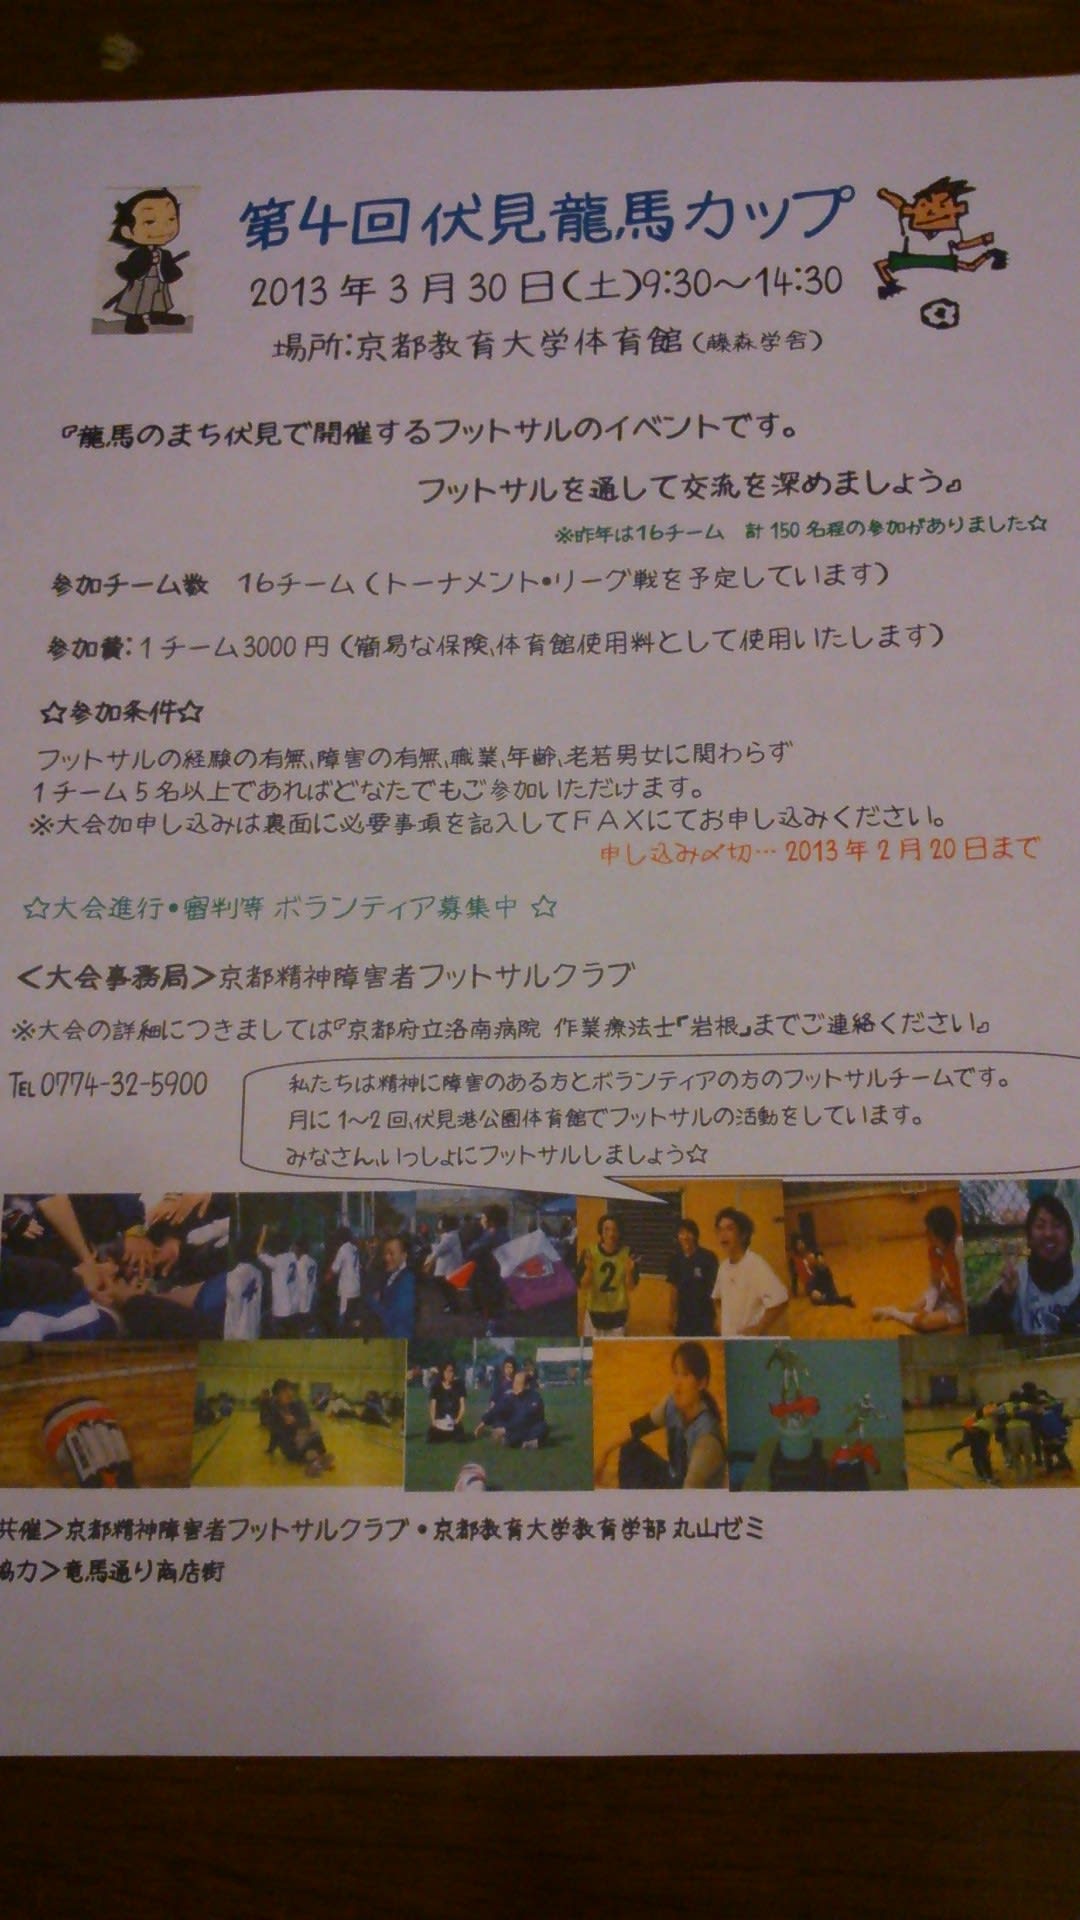 フットサルイベント 第4回伏見龍馬カップ 開催 京都精神障害者フットサルクラブ おこしやす京都fc